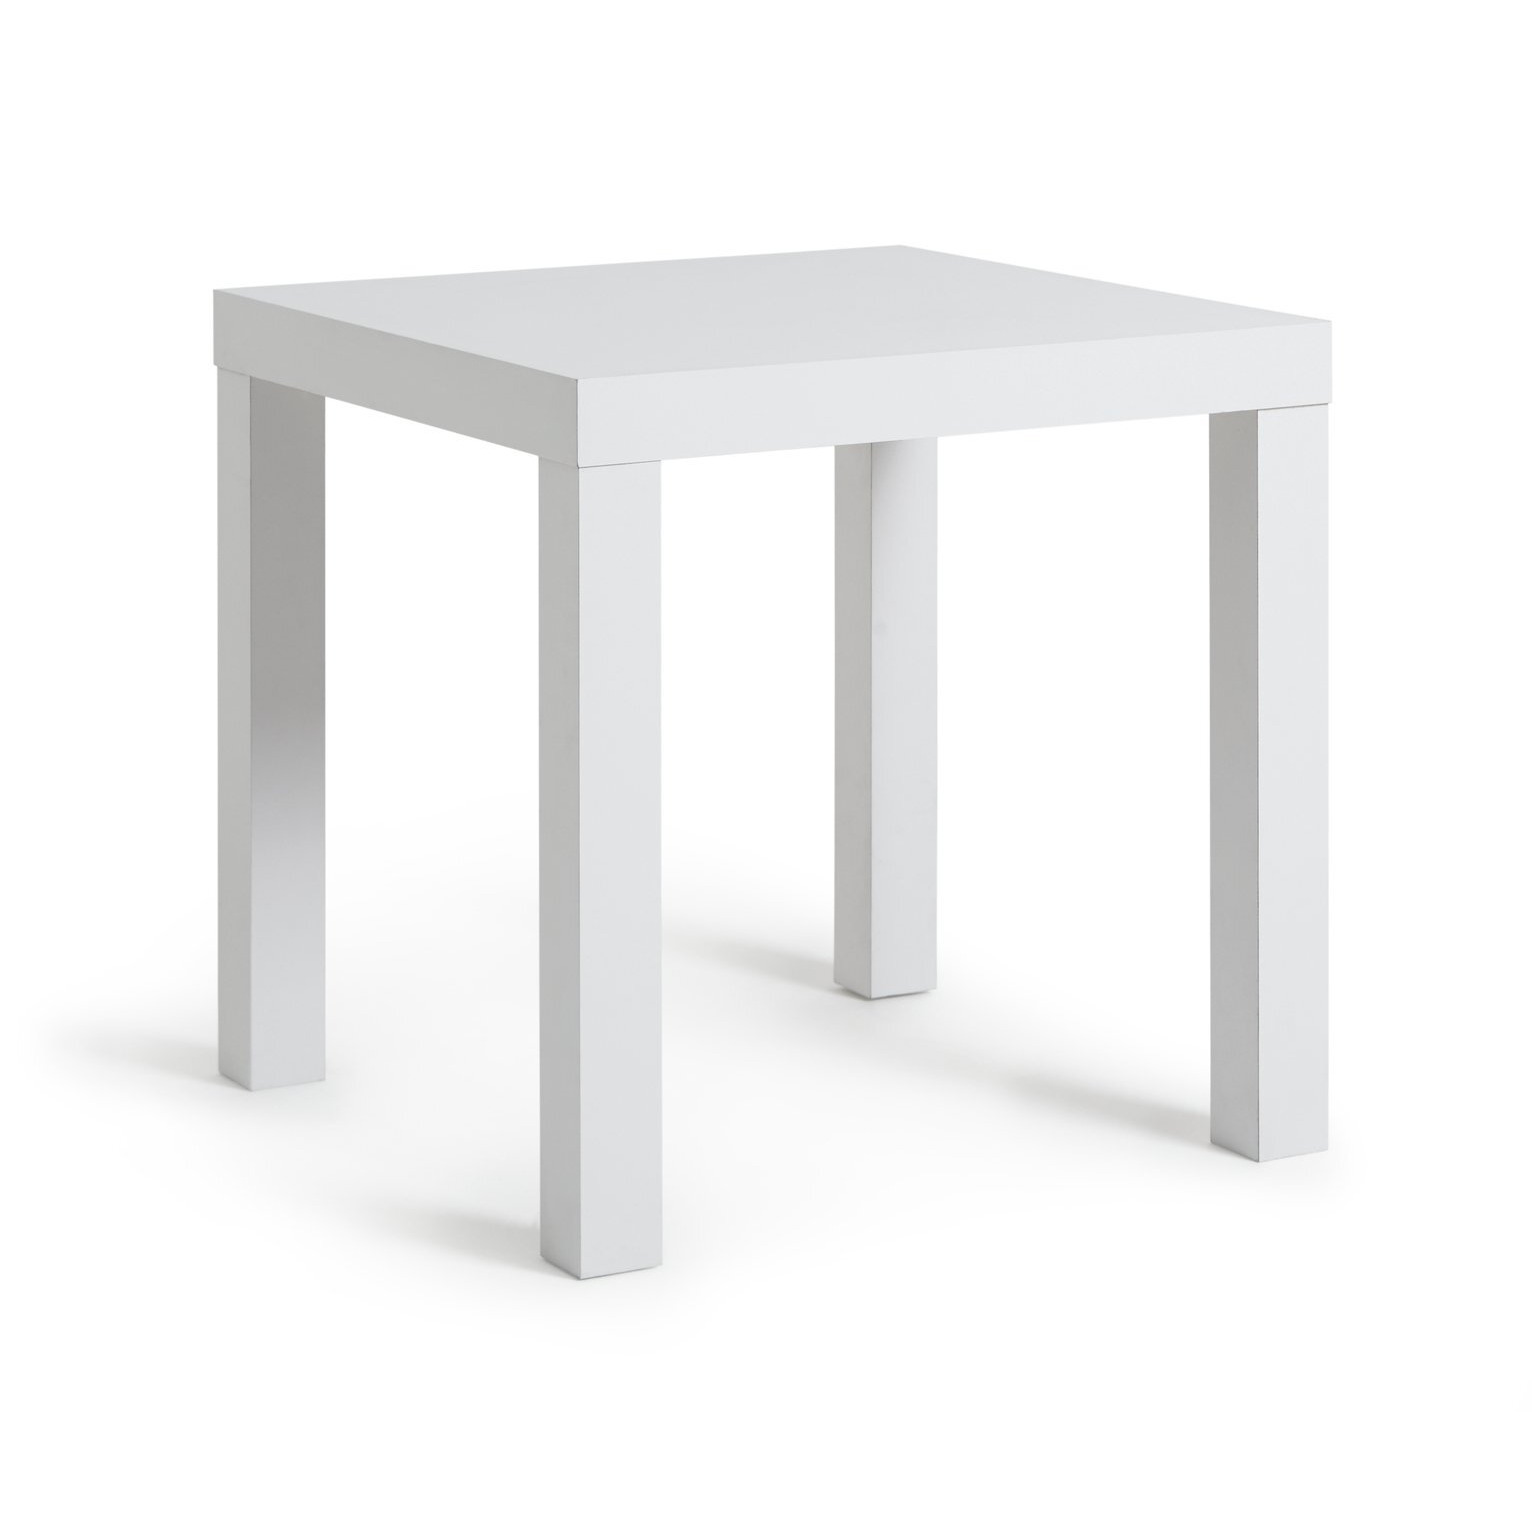 Argos Home End Table - White - image 1